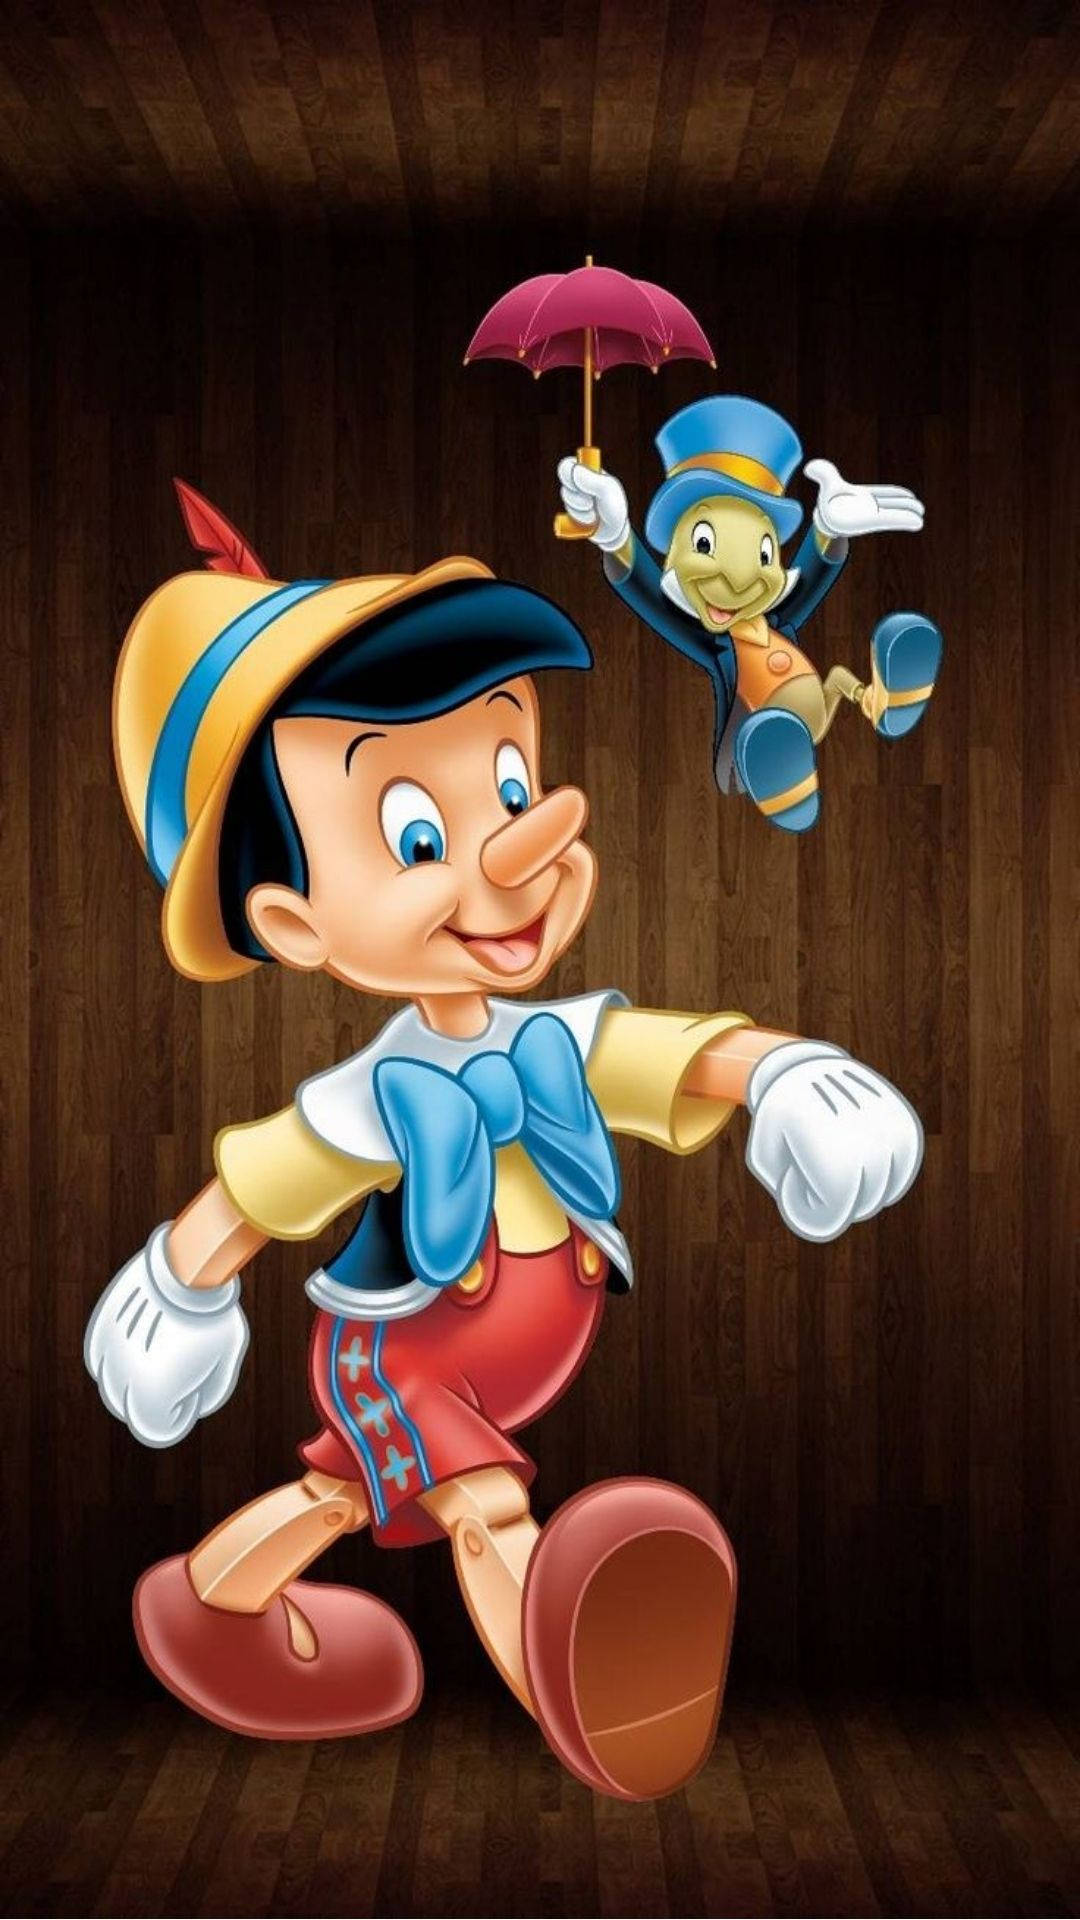 Pinocchio og Jiminy Cricket kaster en mælkebøtte under månen. Wallpaper